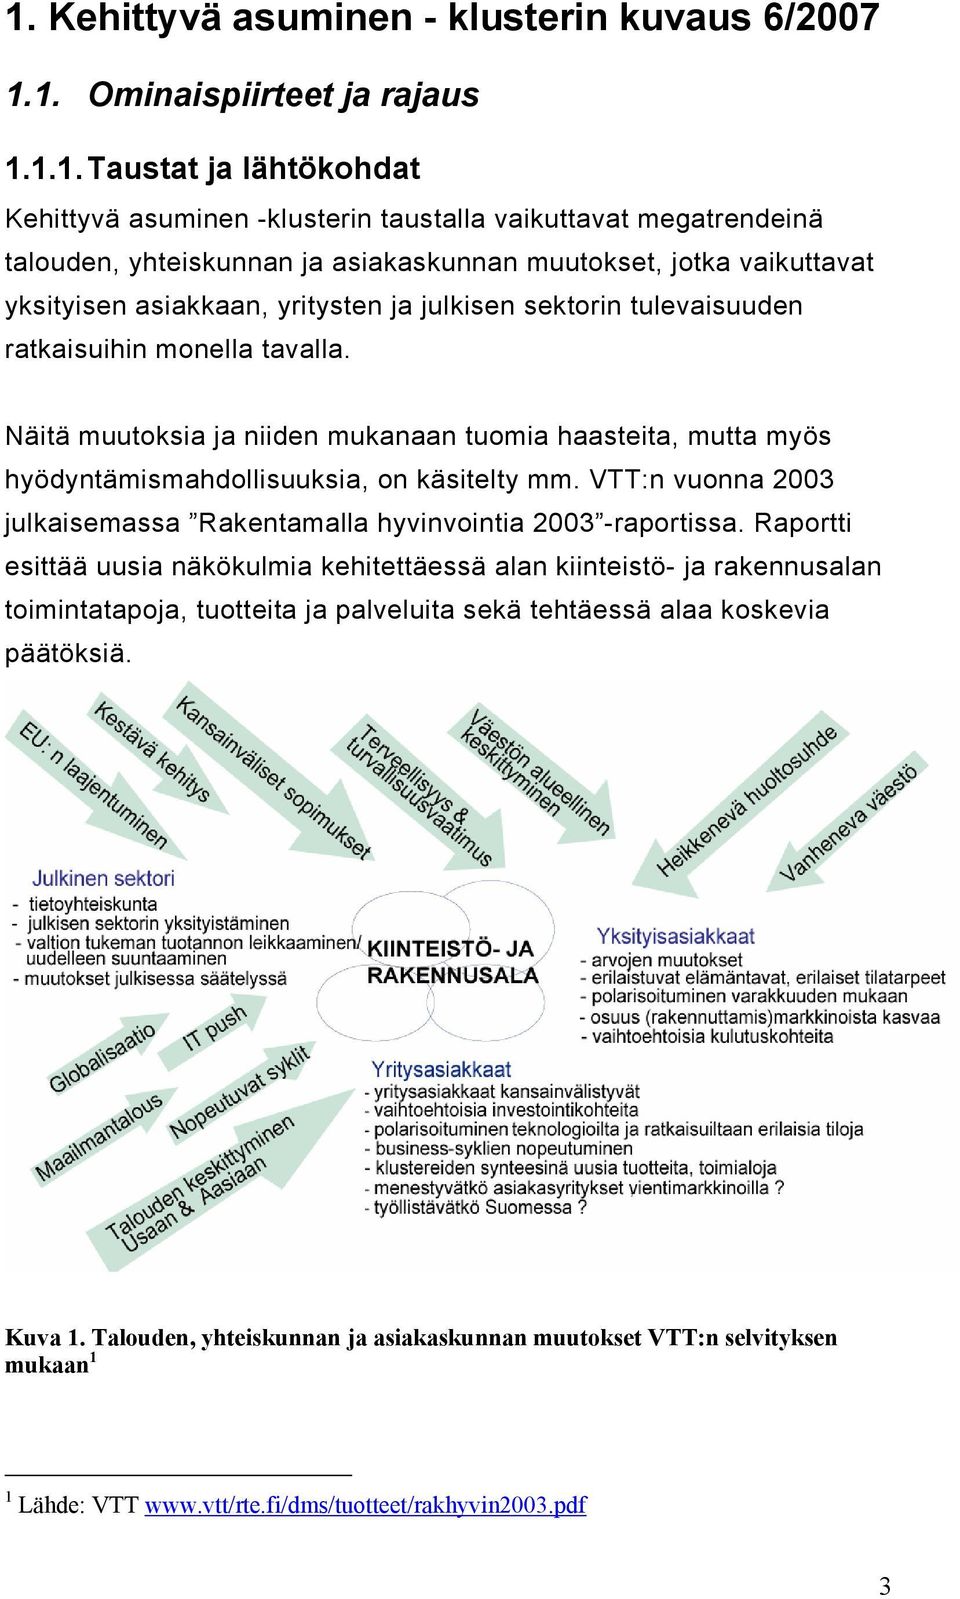 Näitä muutoksia ja niiden mukanaan tuomia haasteita, mutta myös hyödyntämismahdollisuuksia, on käsitelty mm. VTT:n vuonna 2003 julkaisemassa Rakentamalla hyvinvointia 2003 -raportissa.